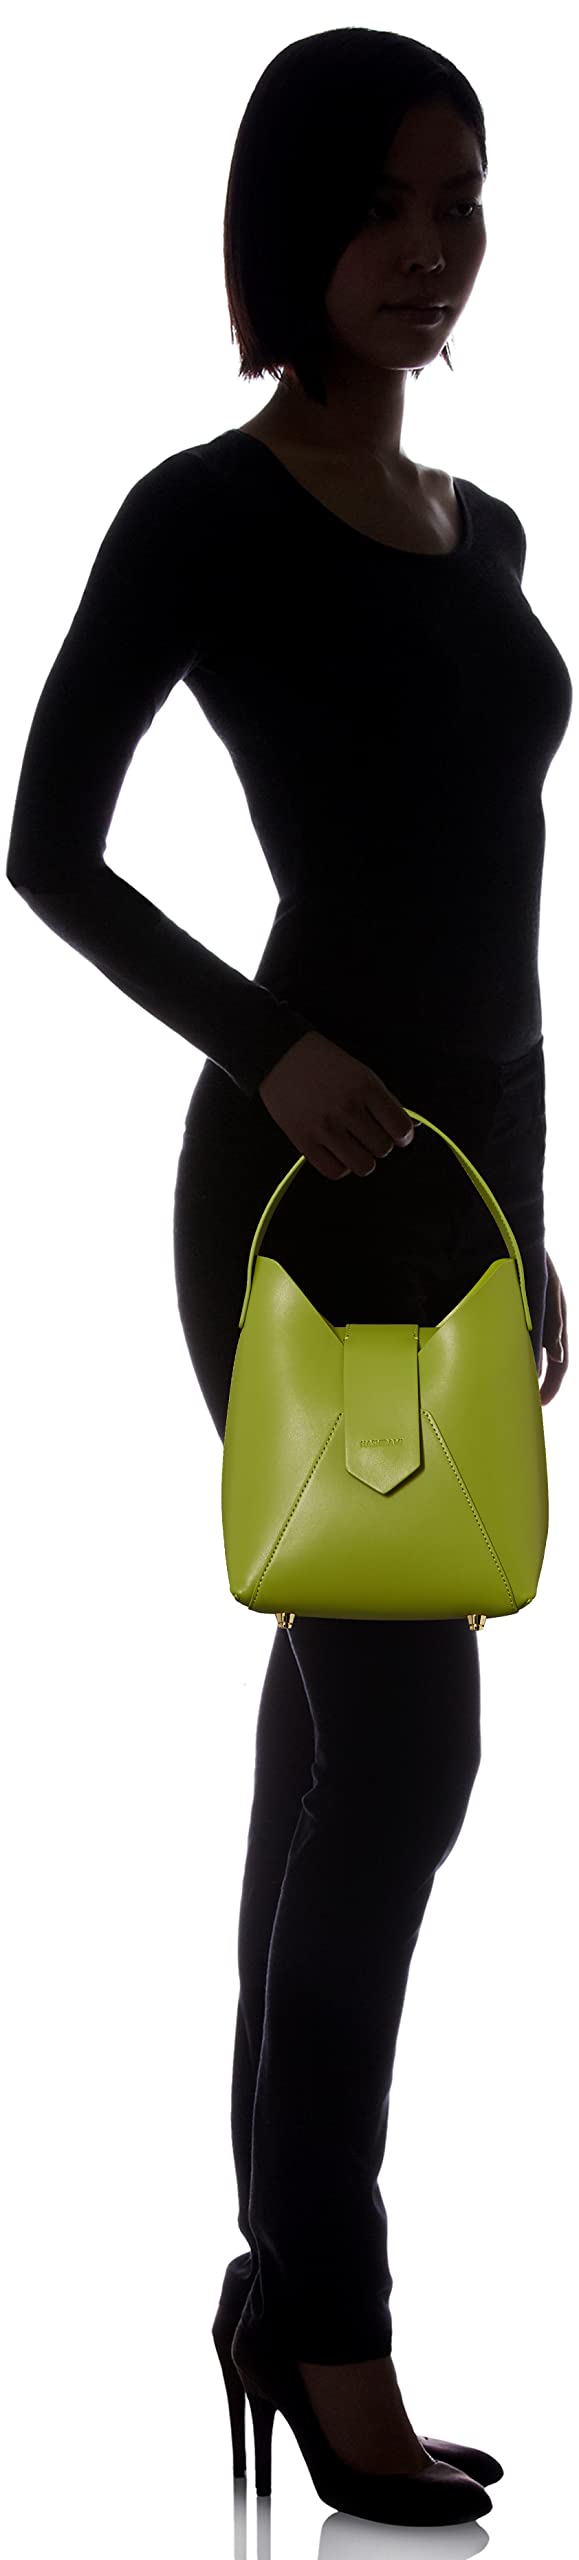 Hazel Handbag, Shoulder Bag, Women's, Leather Bag, Genuine Leather, Cowhide Leather, Fez One Handle Bag